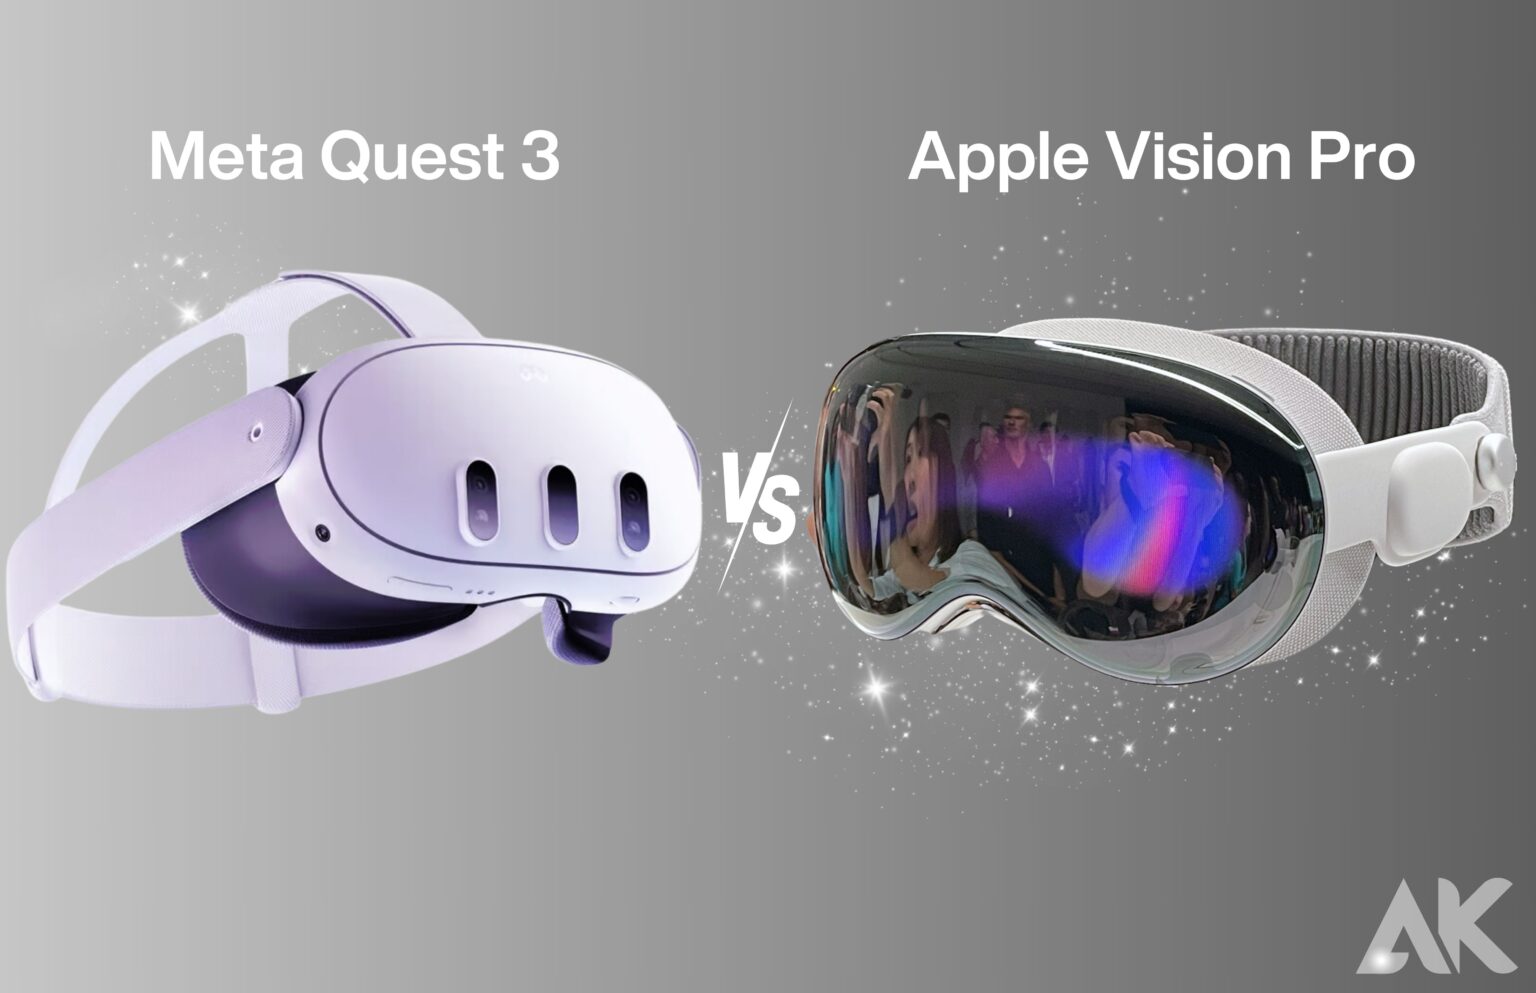 Meta Quest 3 vs. Apple Vision Pro: Head-to-head comparison